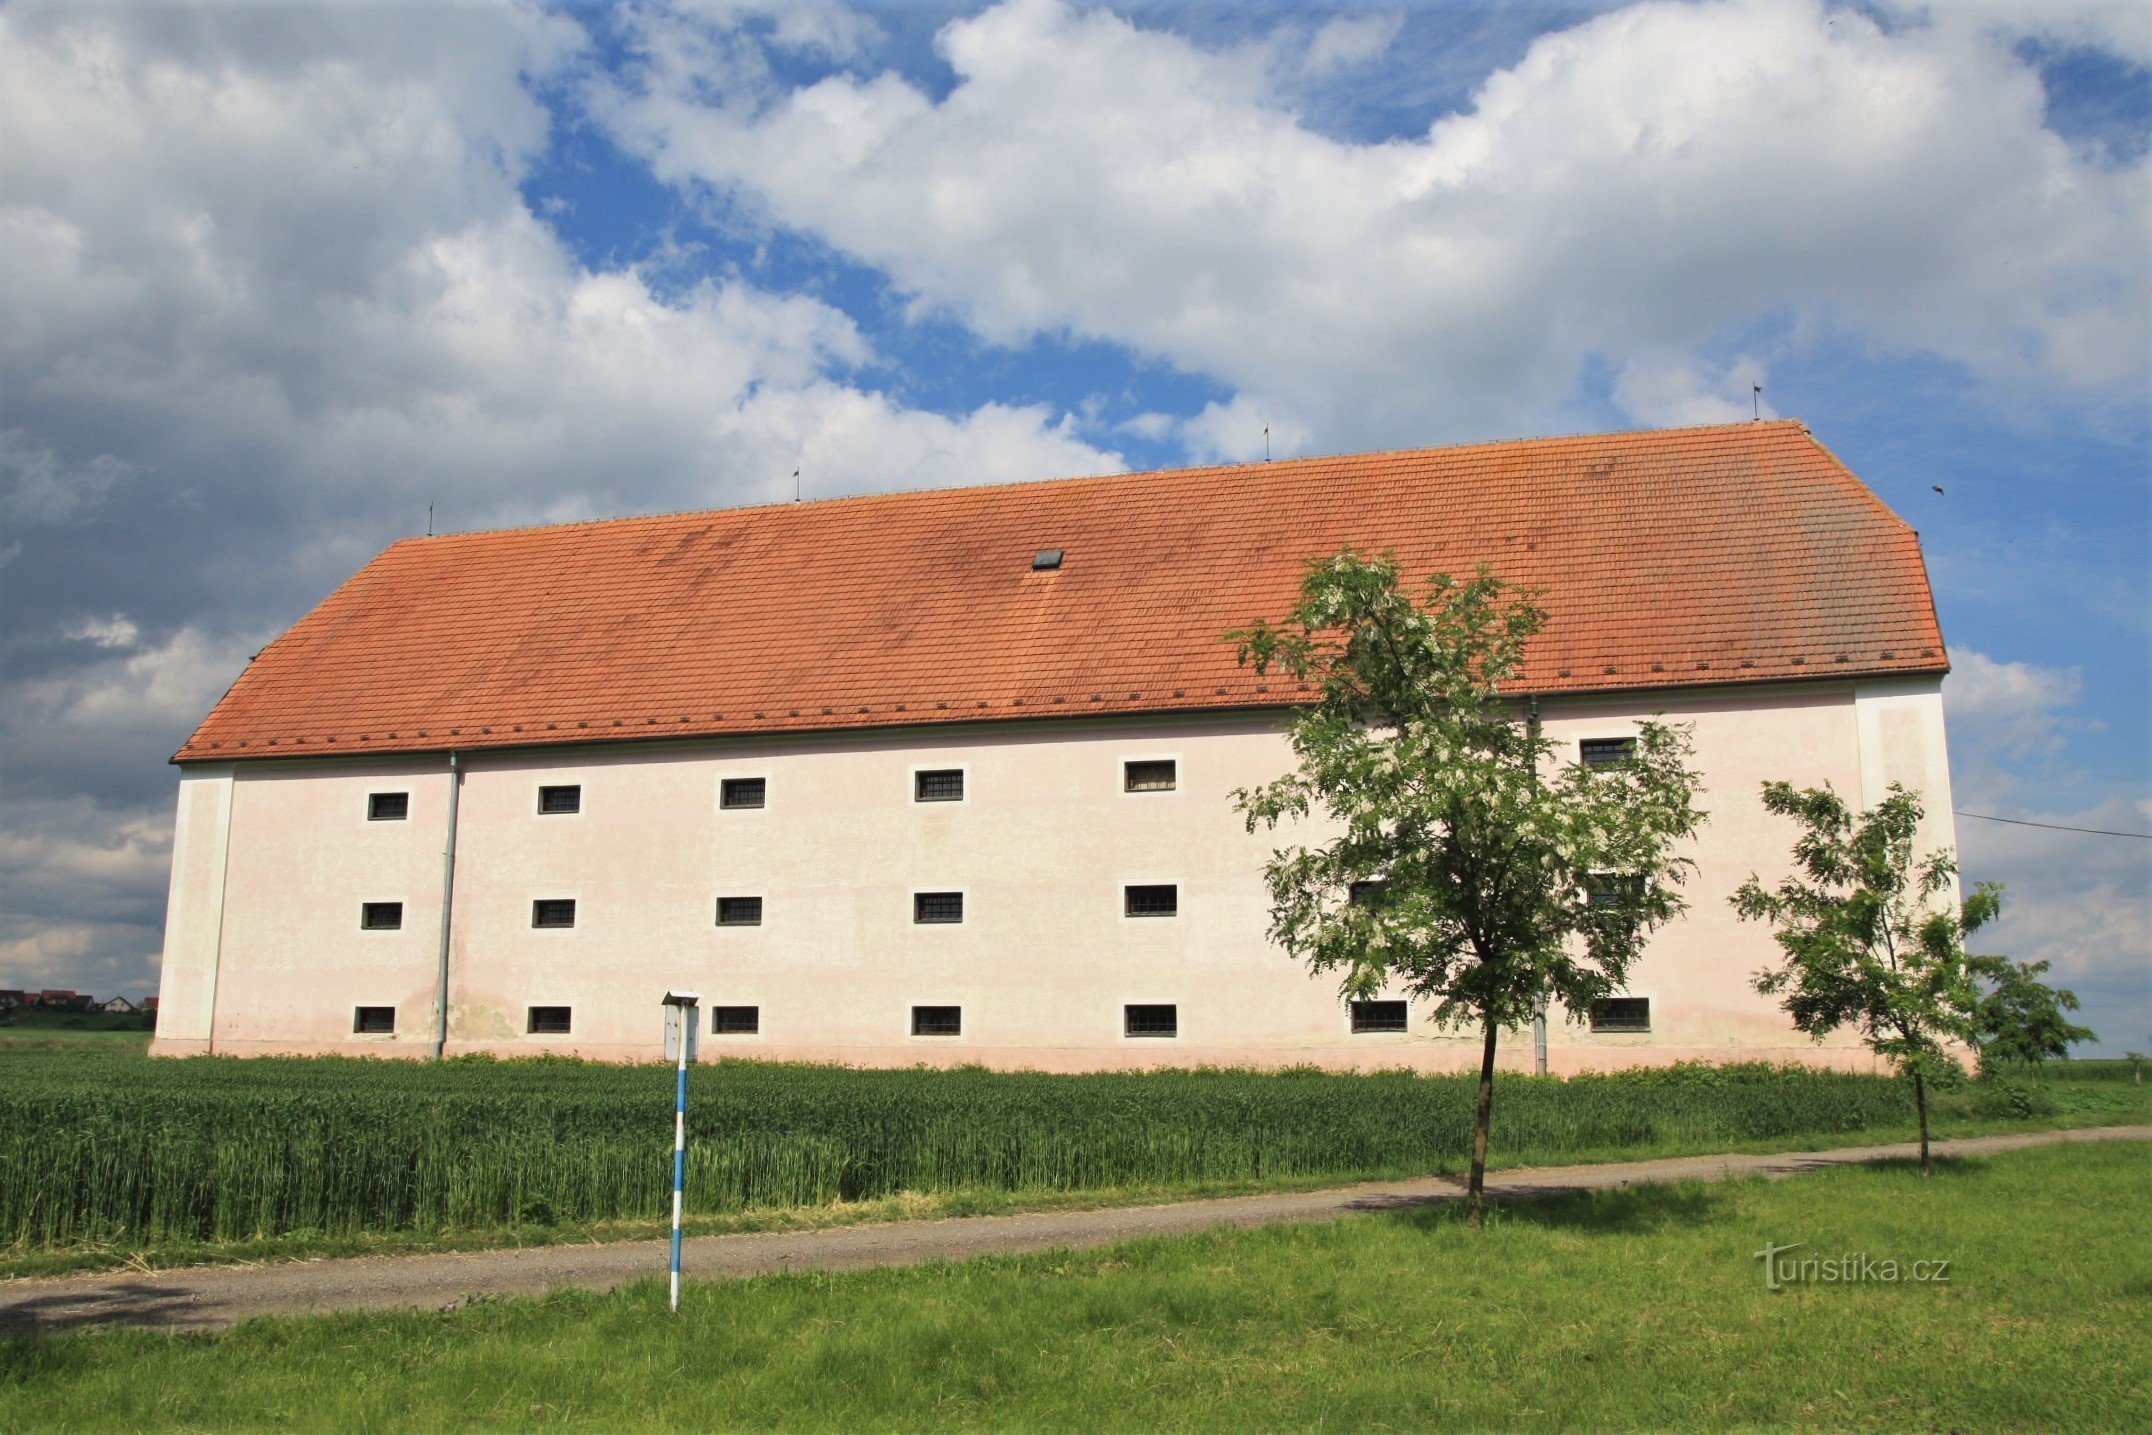 Monastery granary